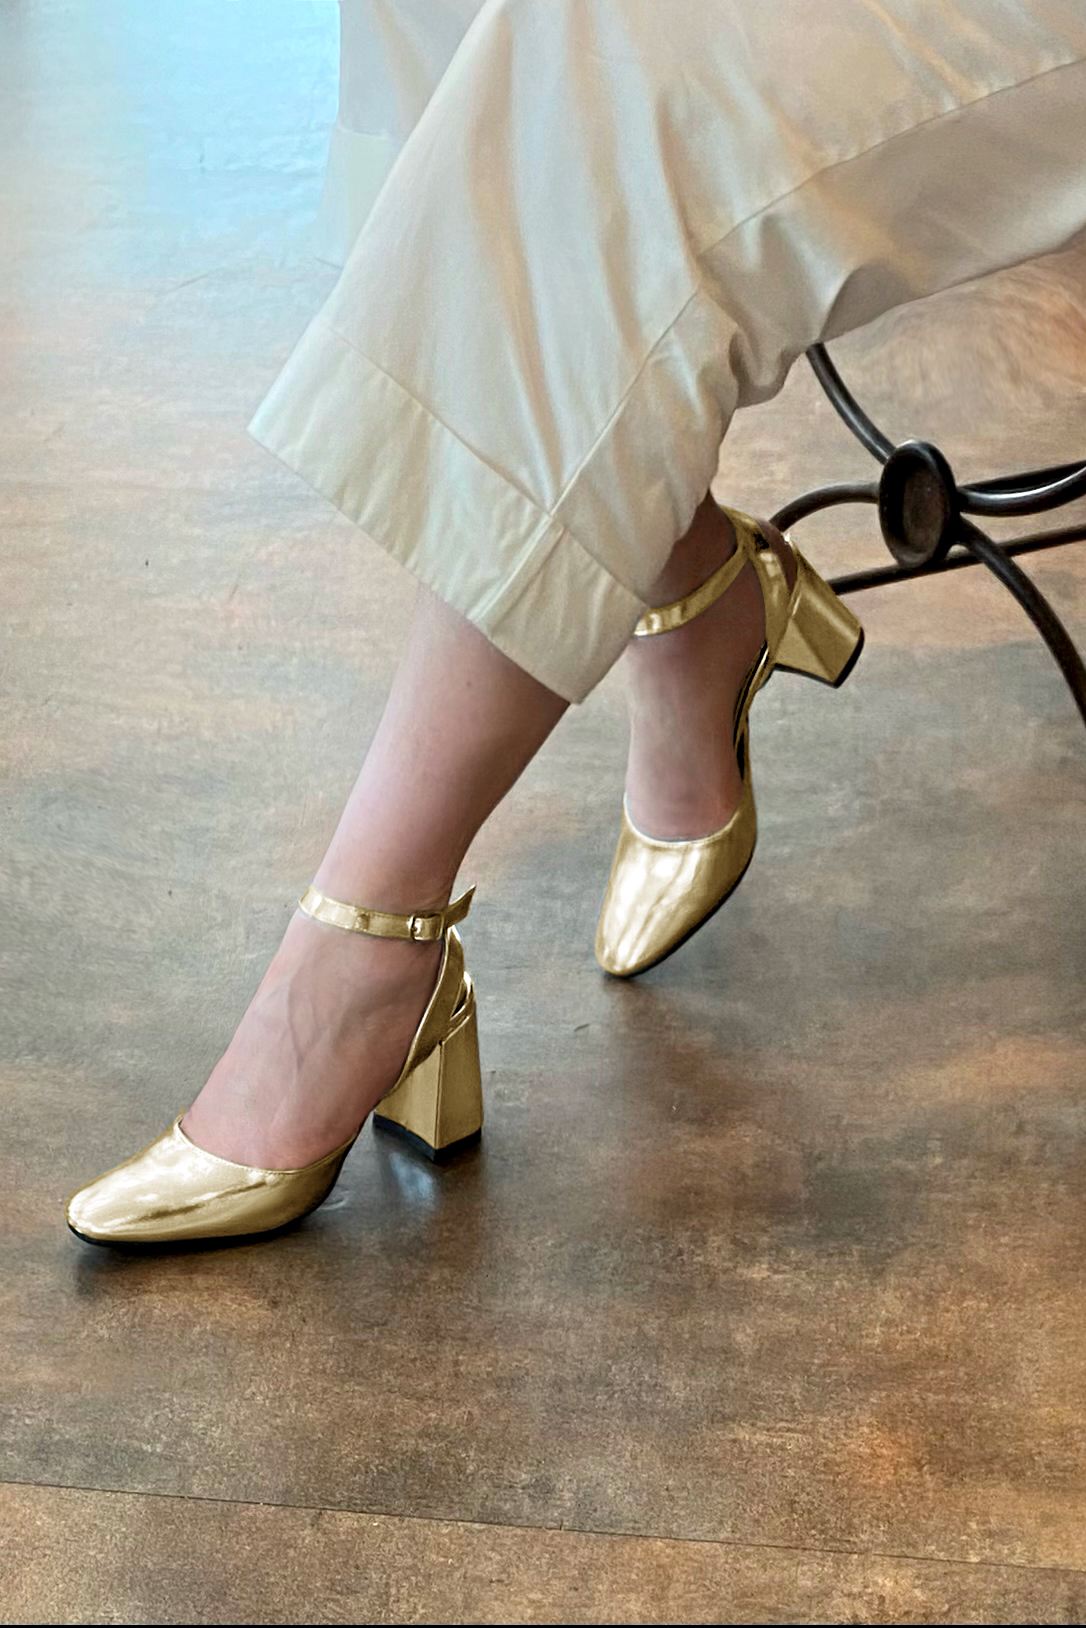 Chaussure femme à brides : Chaussure arrière ouvert avec une bride sur le cou-de-pied couleur or doré. Bout rond. Talon haut évasé. Vue porté - Florence KOOIJMAN